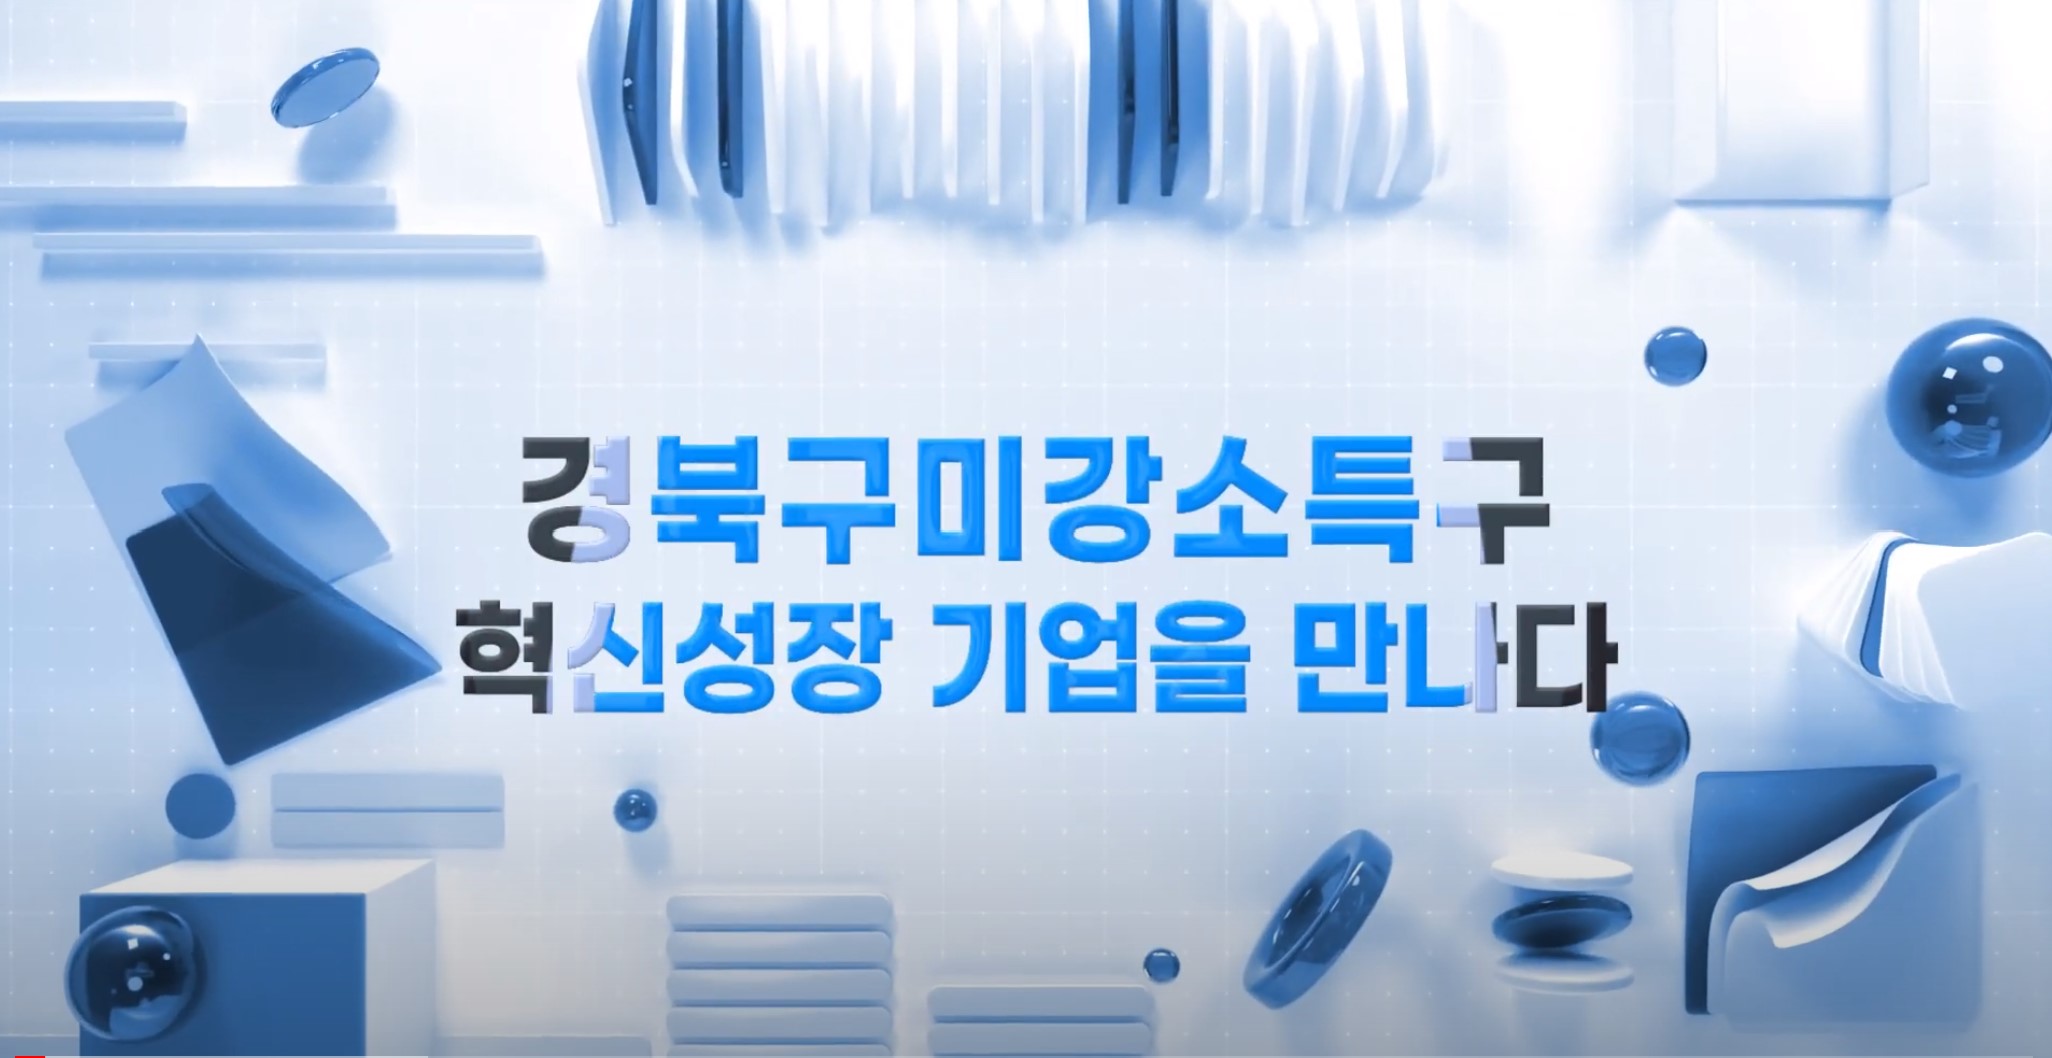 경북구미강소특구 혁신성장 기업 5편 ㅣ (주)포인드